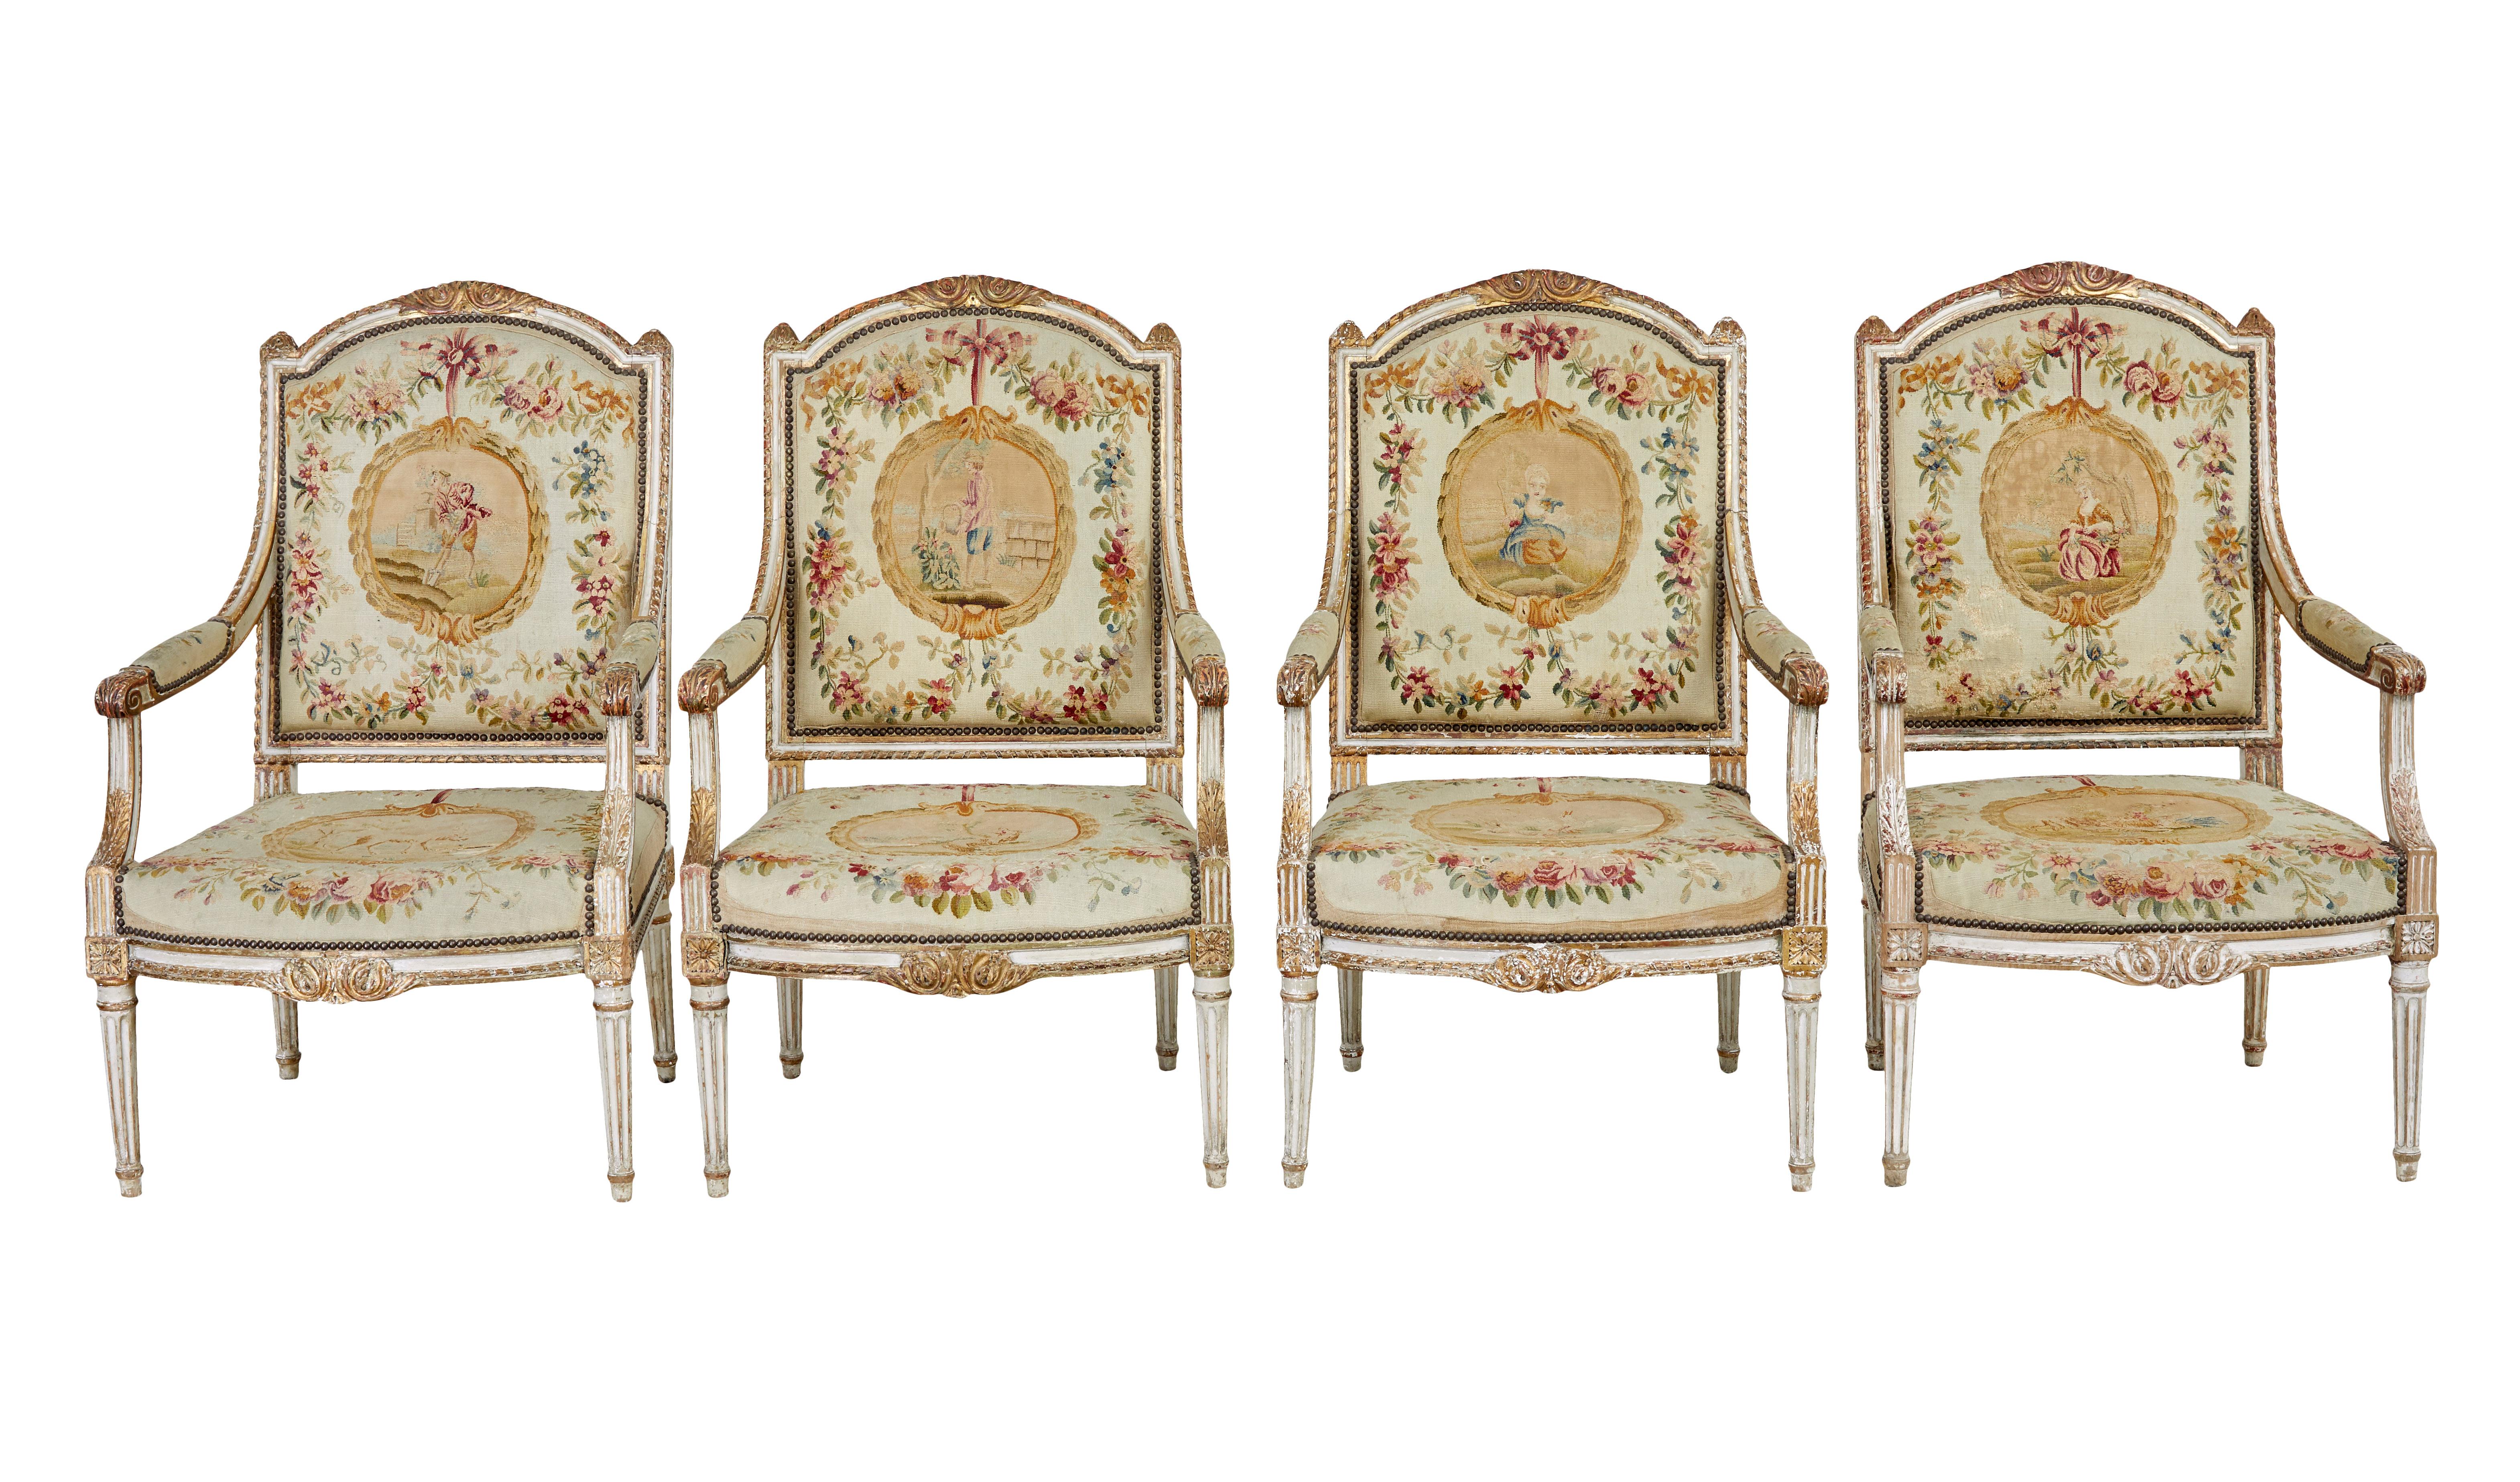 Hochwertiges 5-teiliges vergoldetes Salonmöbel aus der Zeit von Louis Philippe I. um 1830.

Wir freuen uns, Ihnen diese hochwertige vergoldete Salonsuite mit originalem Wandteppichbezug aus der Zeit von Louis Philippe dem Ersten von Frankreich